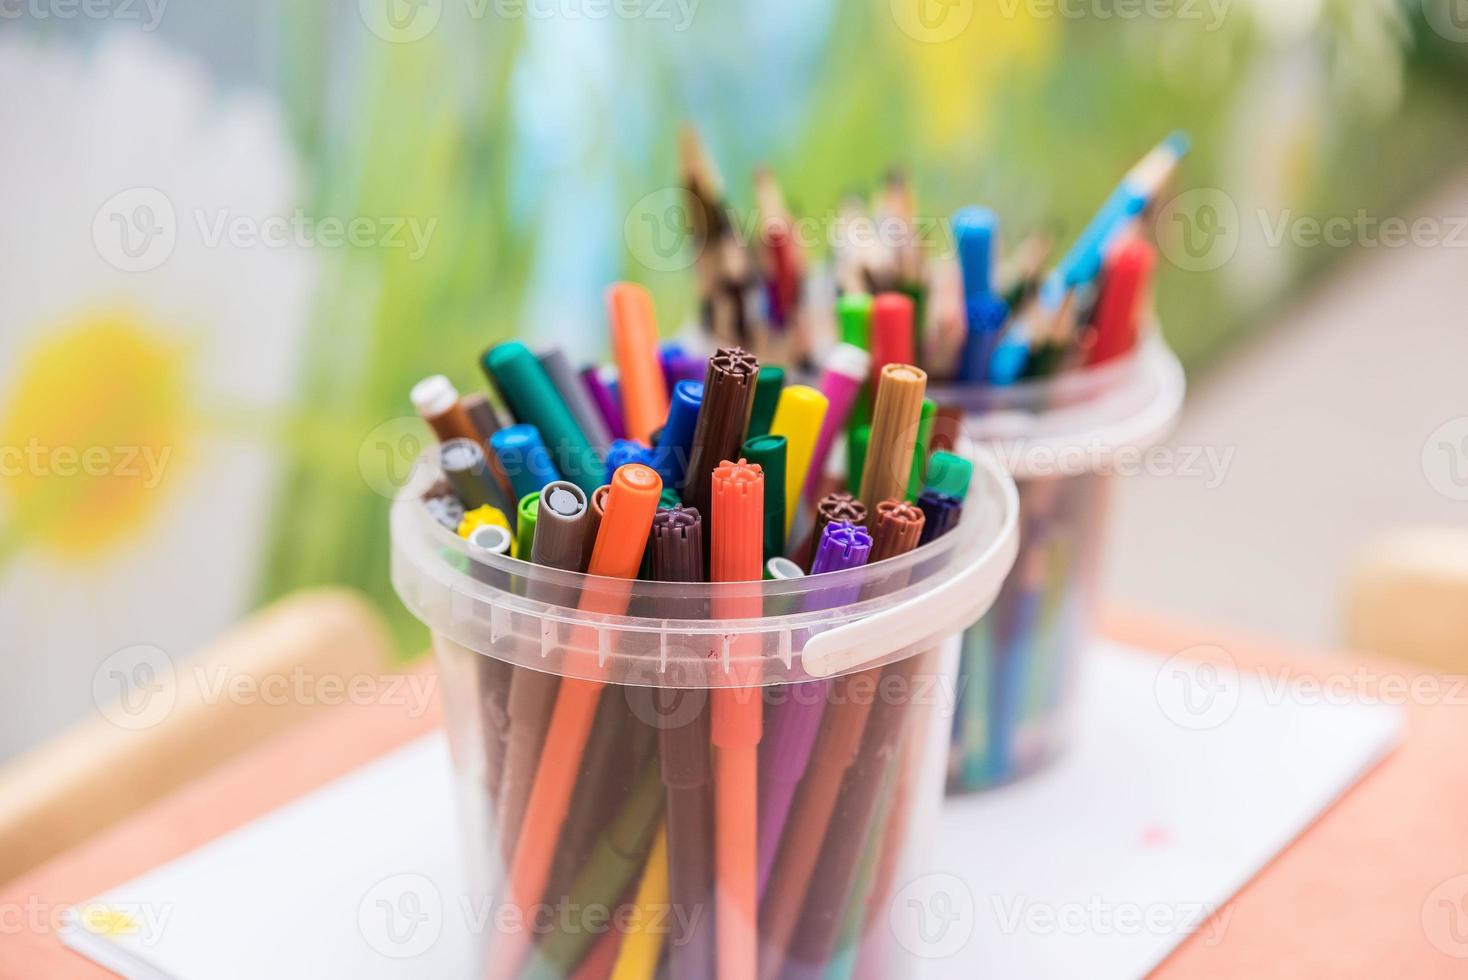 ferramentas de desenho lápis de cor em copo de vidro foto